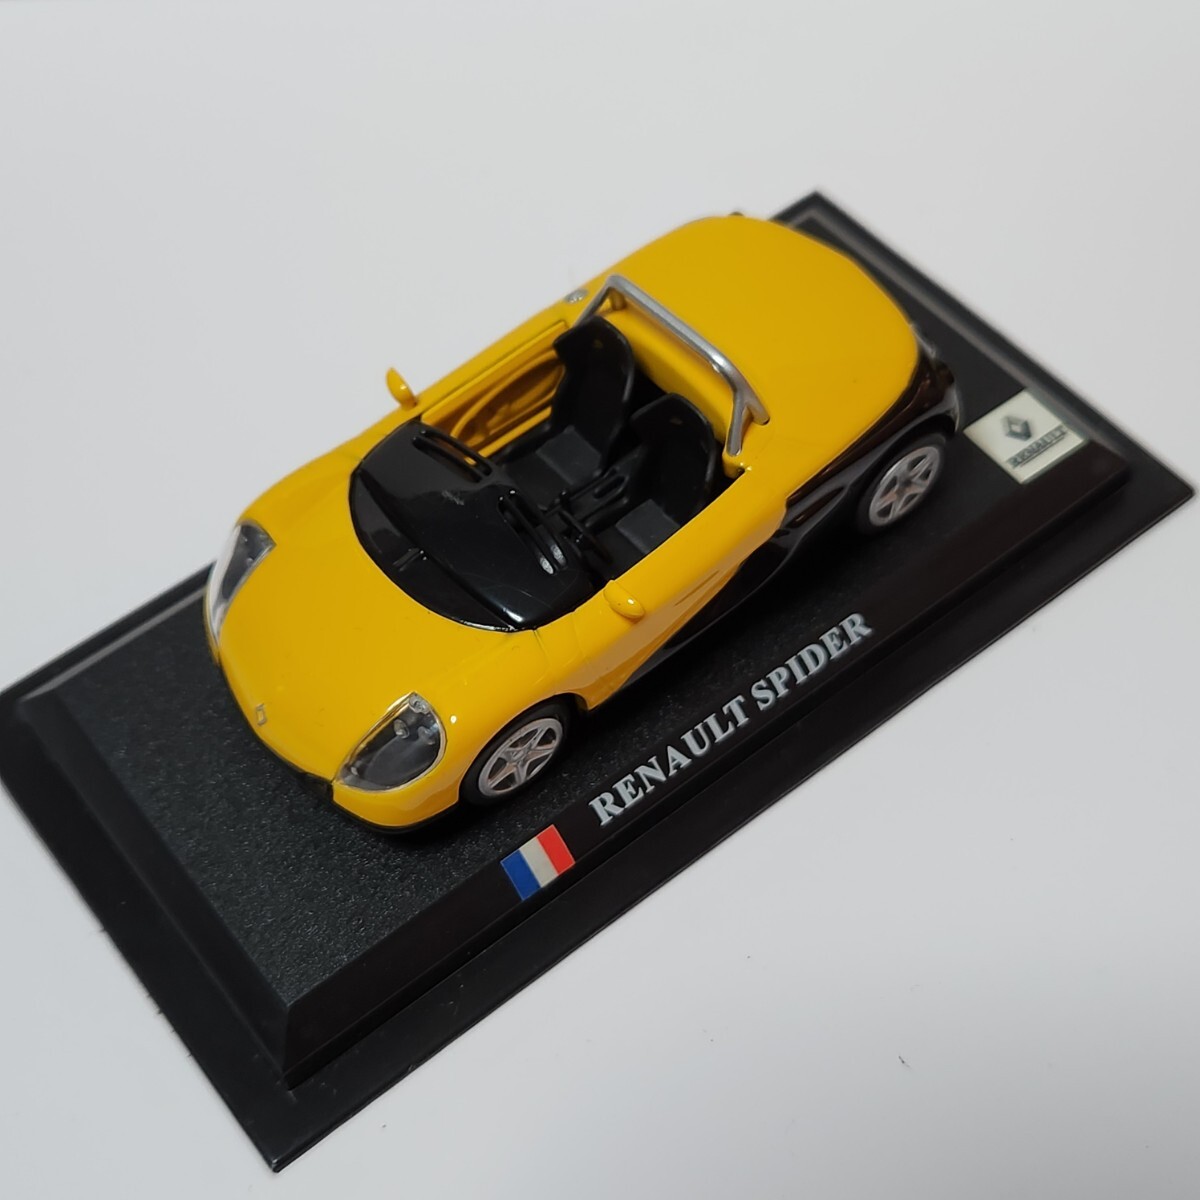 ミニカー RENAULT SPIDER デルプラドカーコレクション 世界の名車コレクション スケール1/43 イエローブラック ケース付き _画像3